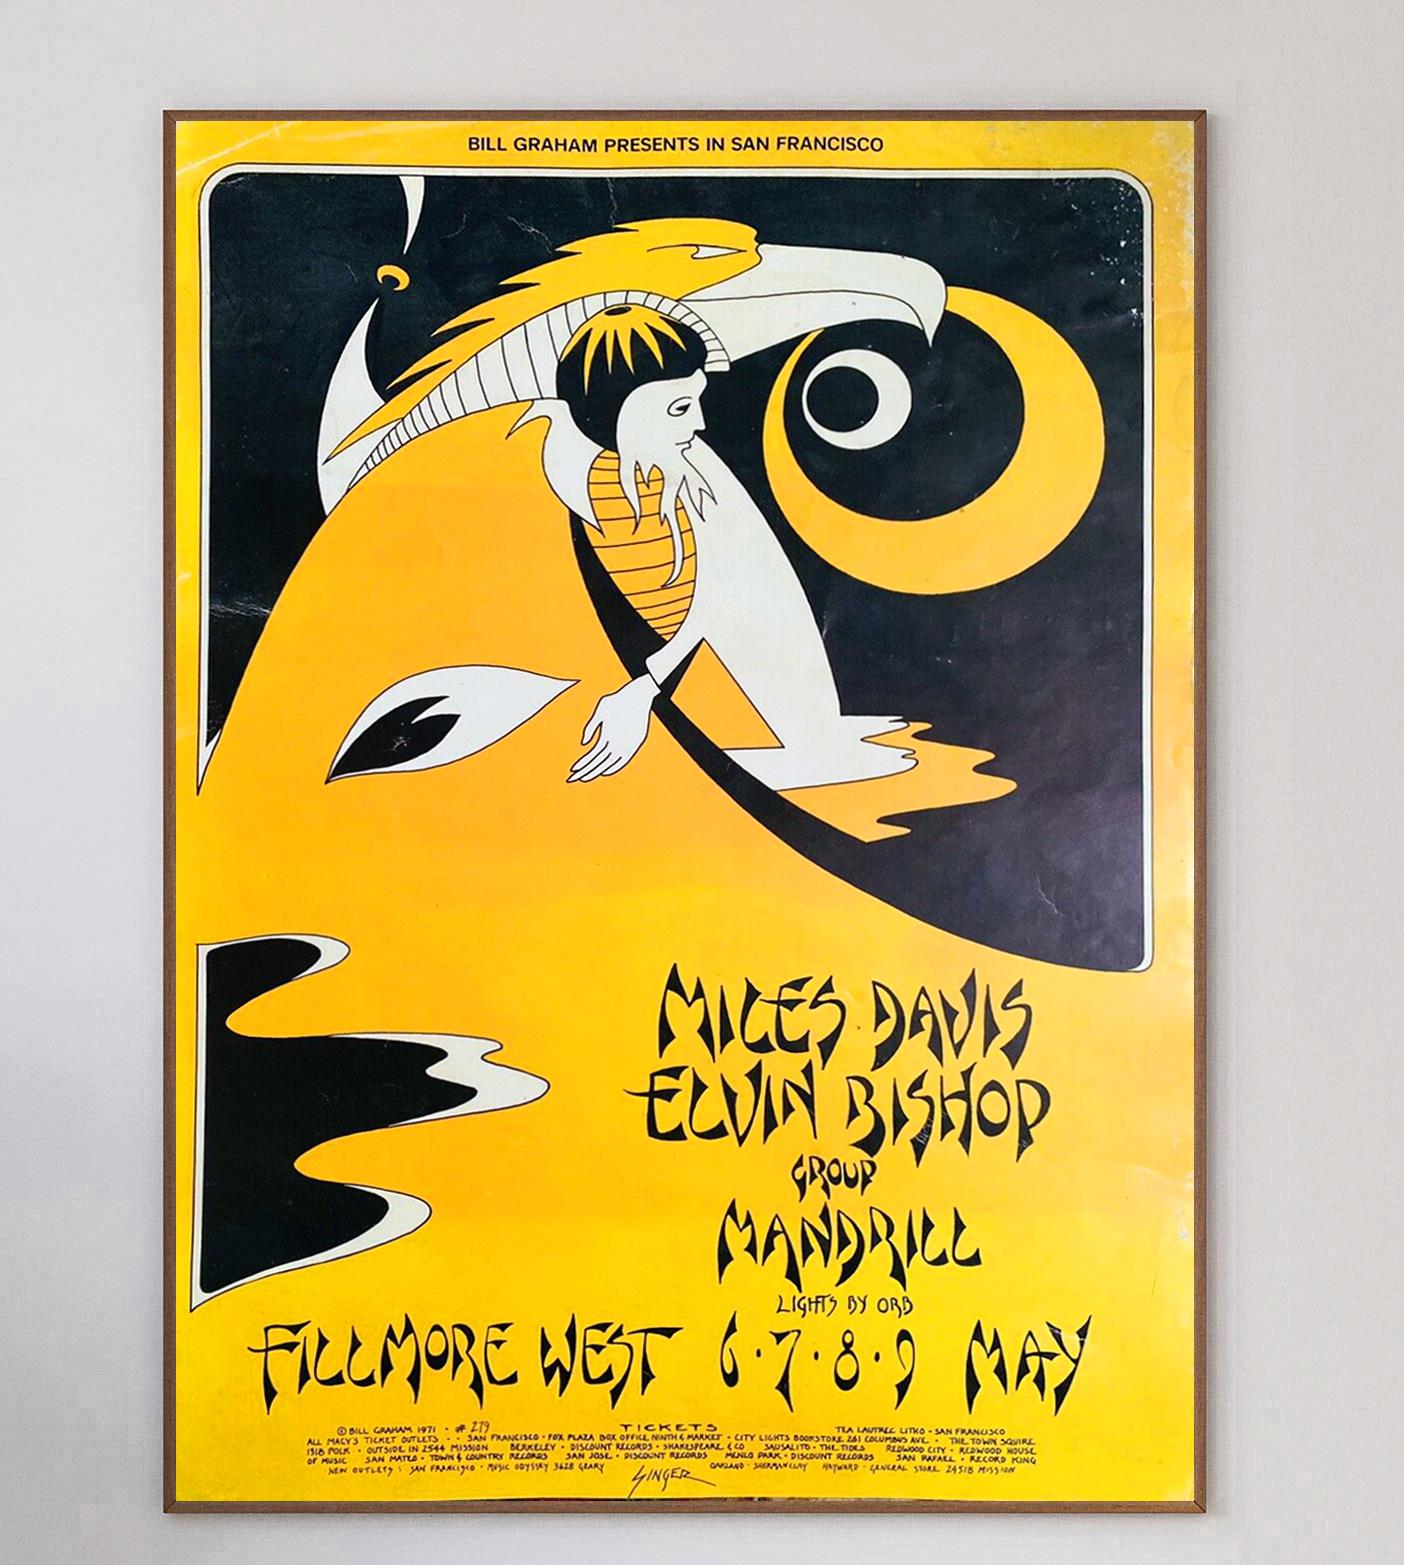 Dieses wunderschöne Plakat wurde 1971 von dem legendären Konzertplakatkünstler David Singer entworfen, um ein Live-Konzert von Miles Davis, Elvin Bishop & Mandrin im weltberühmten Fillmore West in San Francisco zu bewerben. Singer ist vor allem für